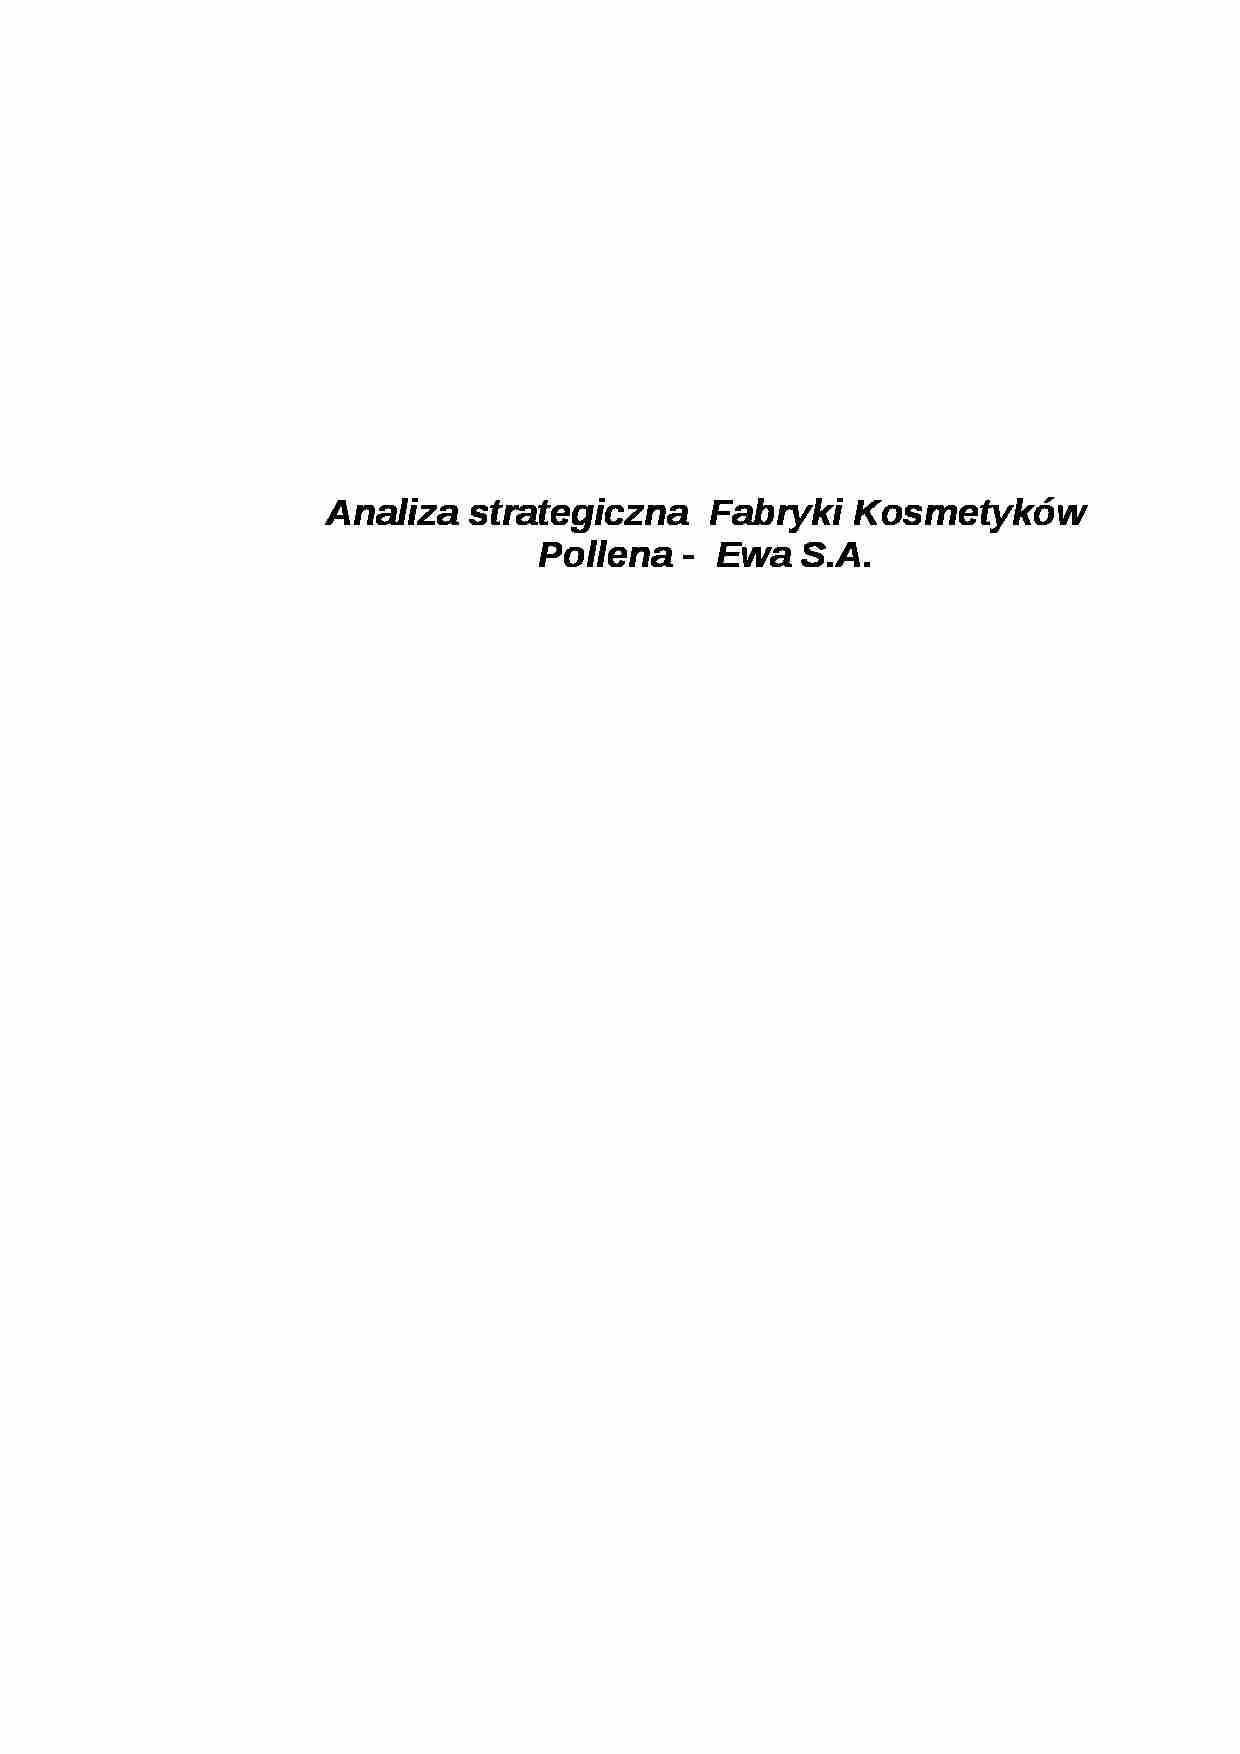 Analiza strategiczna Fabryki Kosmetyków Pollena  - strona 1